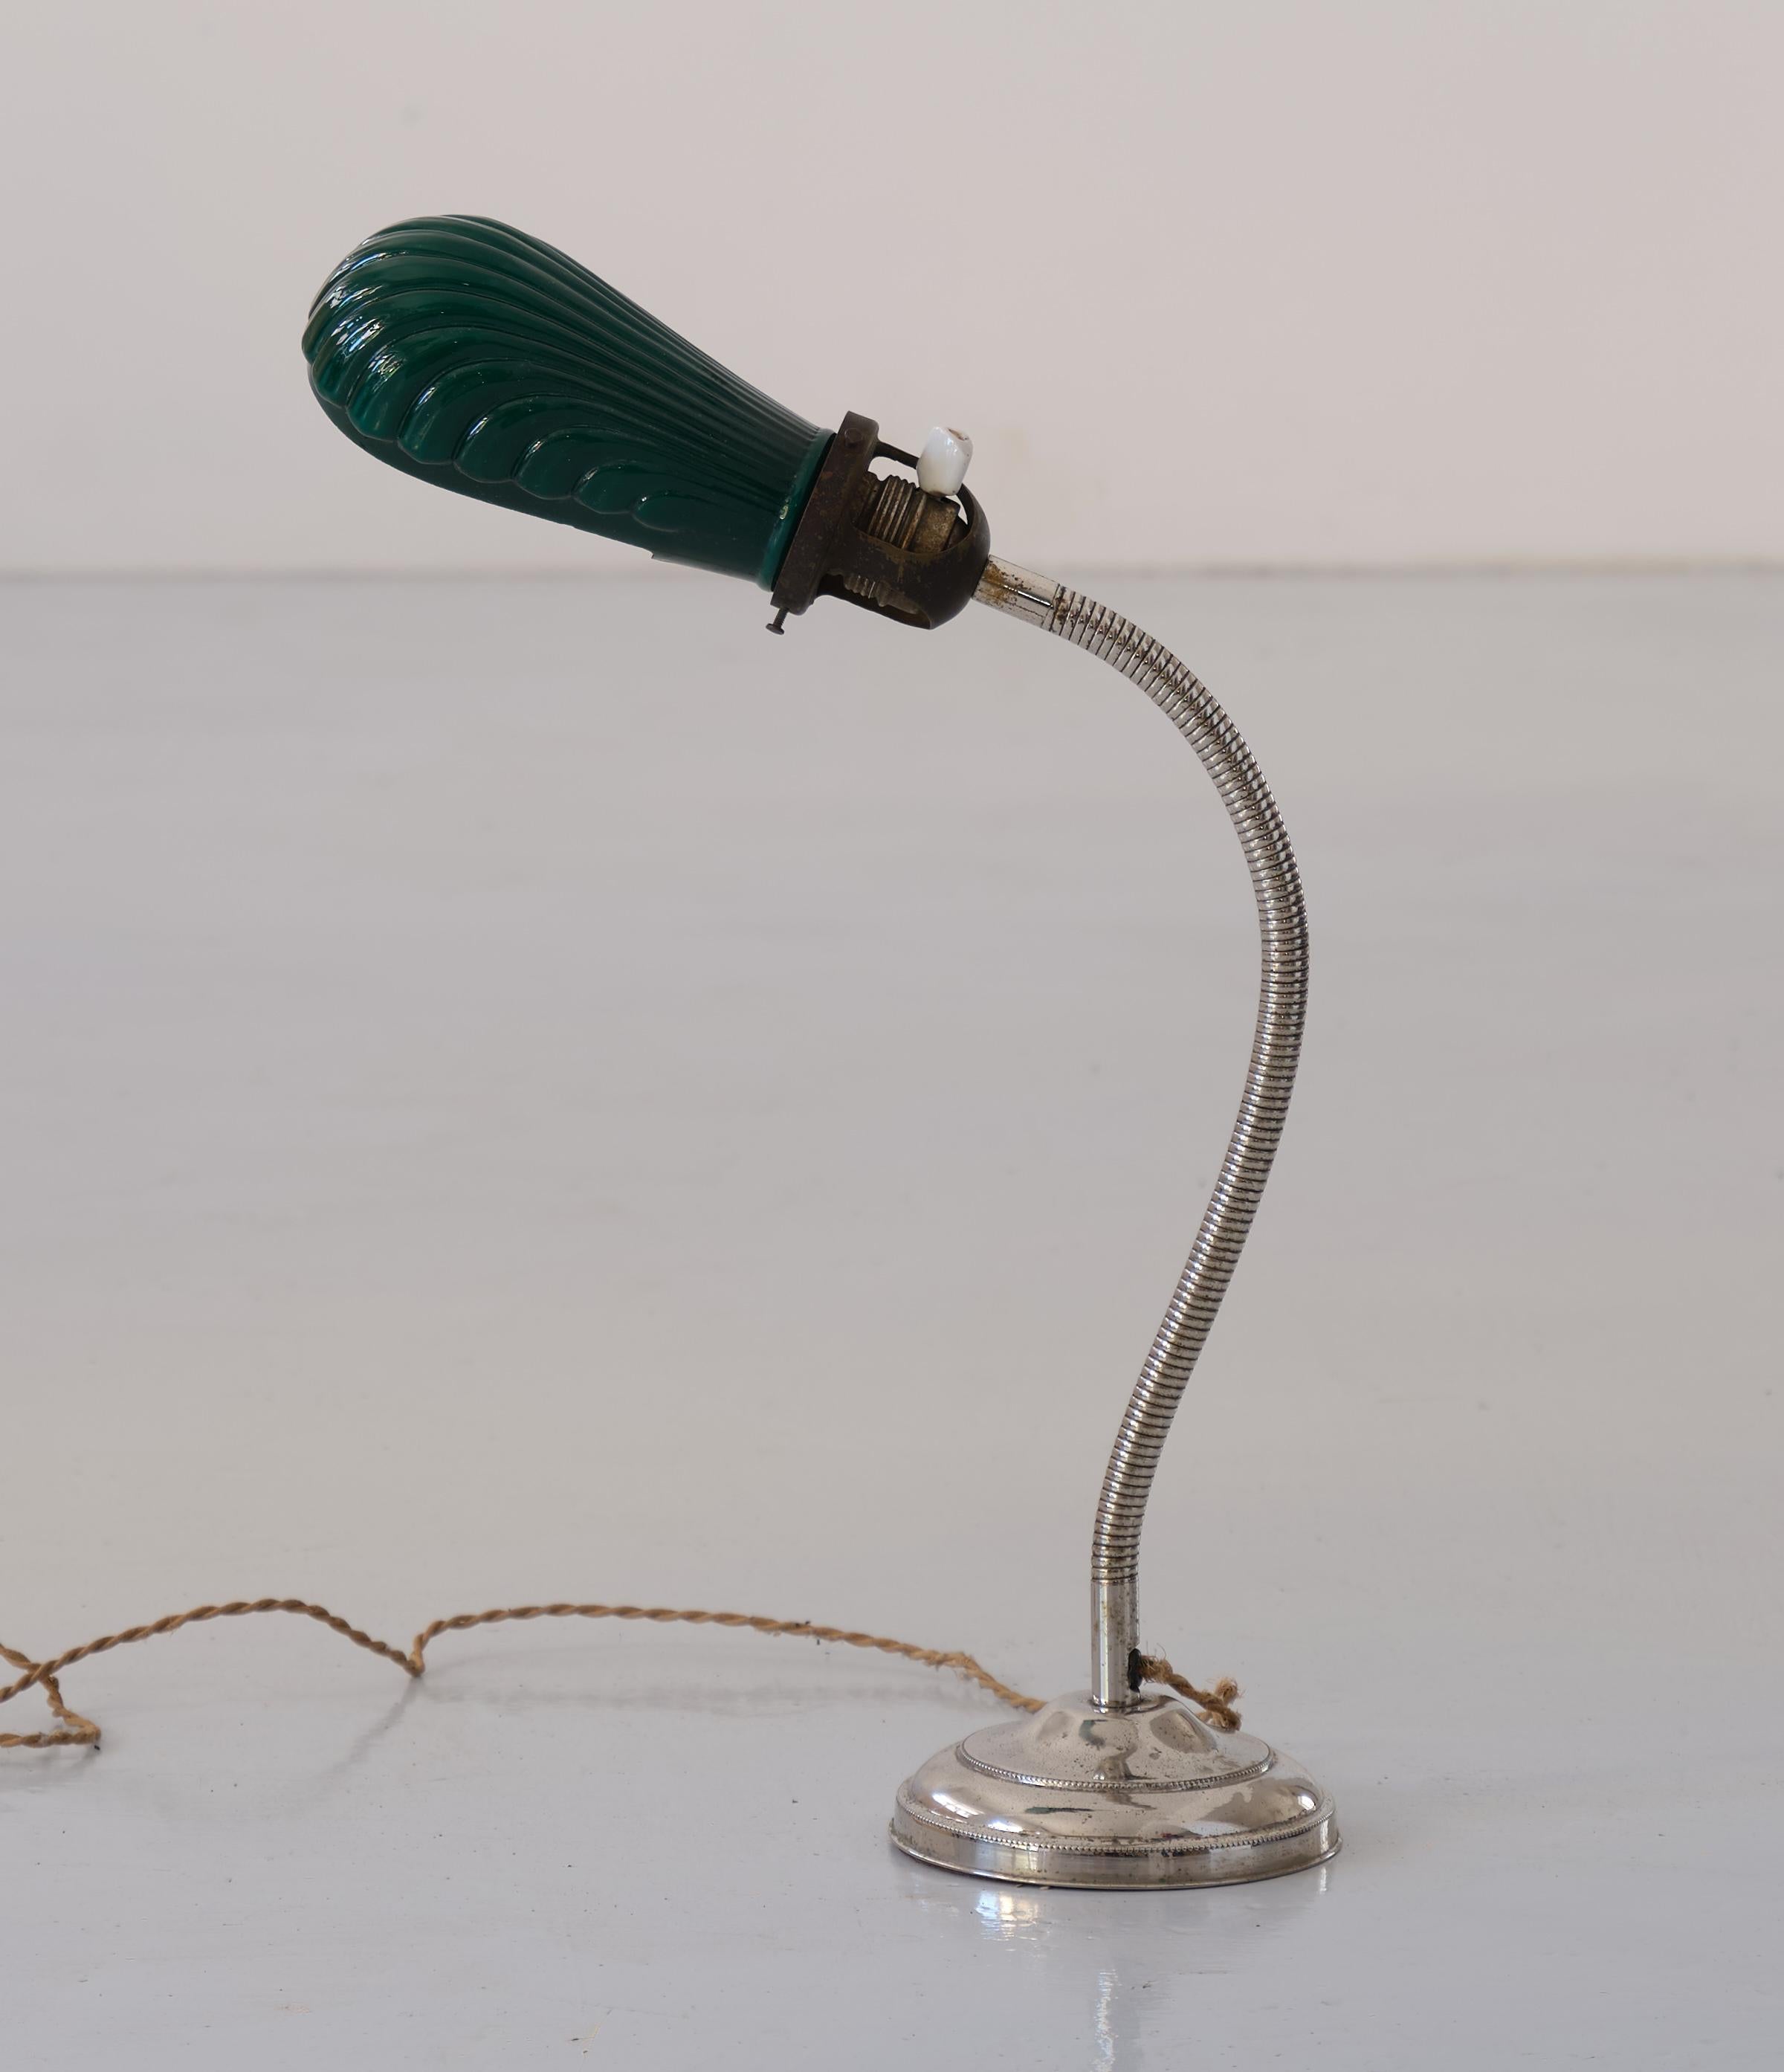 Vintage Tischlampe, aus verchromtem Metall und grünem Glasschirm , Italien

Muschelförmiger Lampenschirm und zweifarbiges Glas, außen grün und innen weiß
Diese Lampe ist in gutem Vintage-Zustand.

Keramischer Drehschalter. 
Originaler